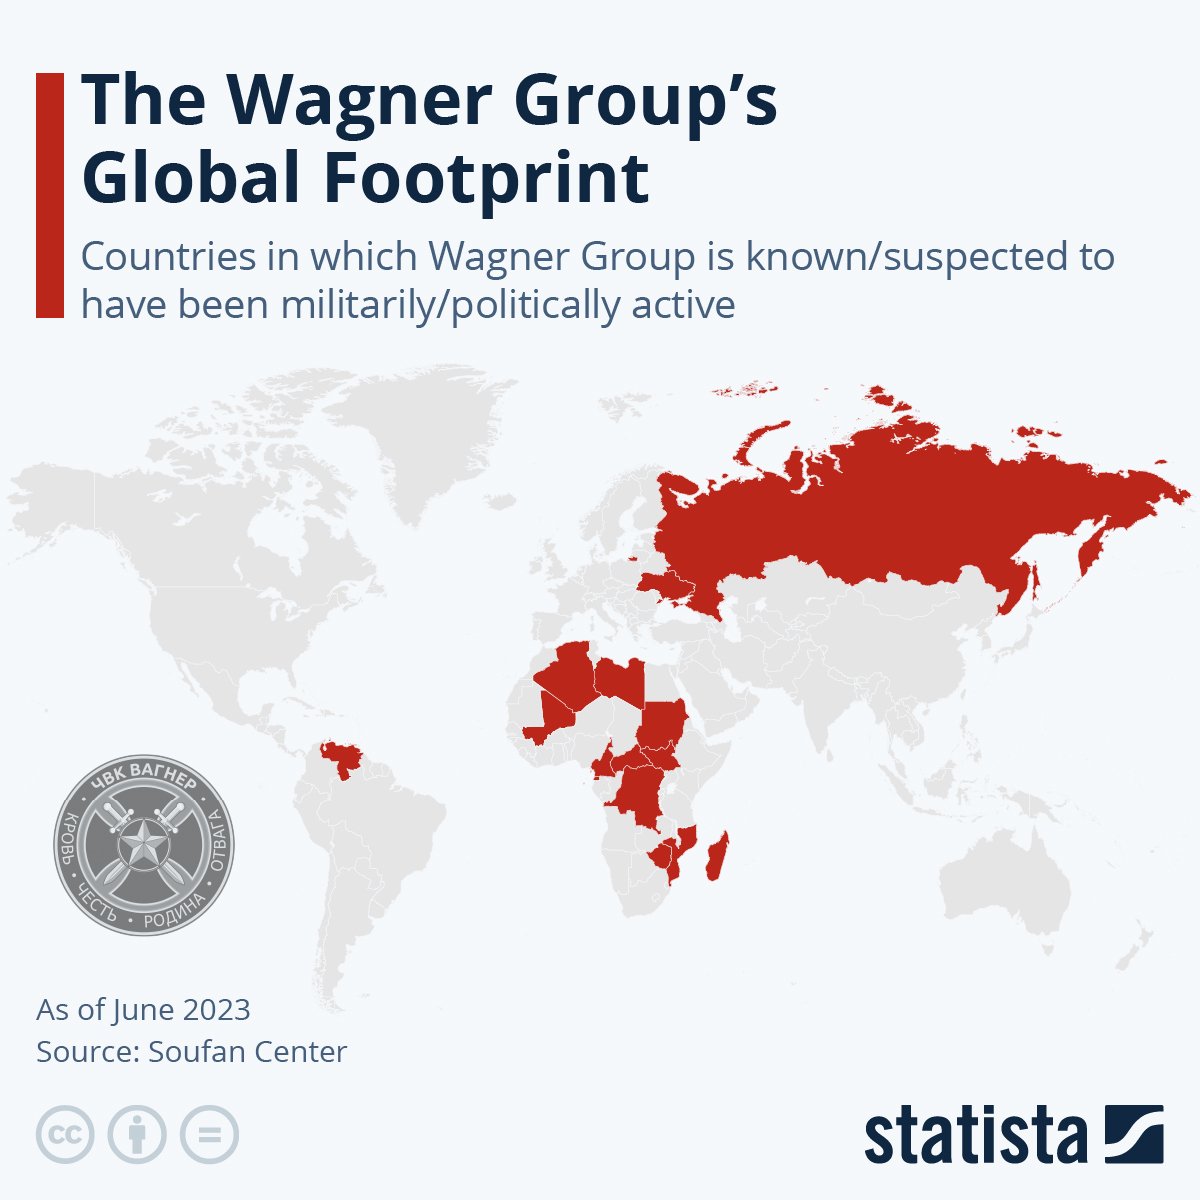 Wagner'in askeri/politik olarak aktif olduğu ülkeler.